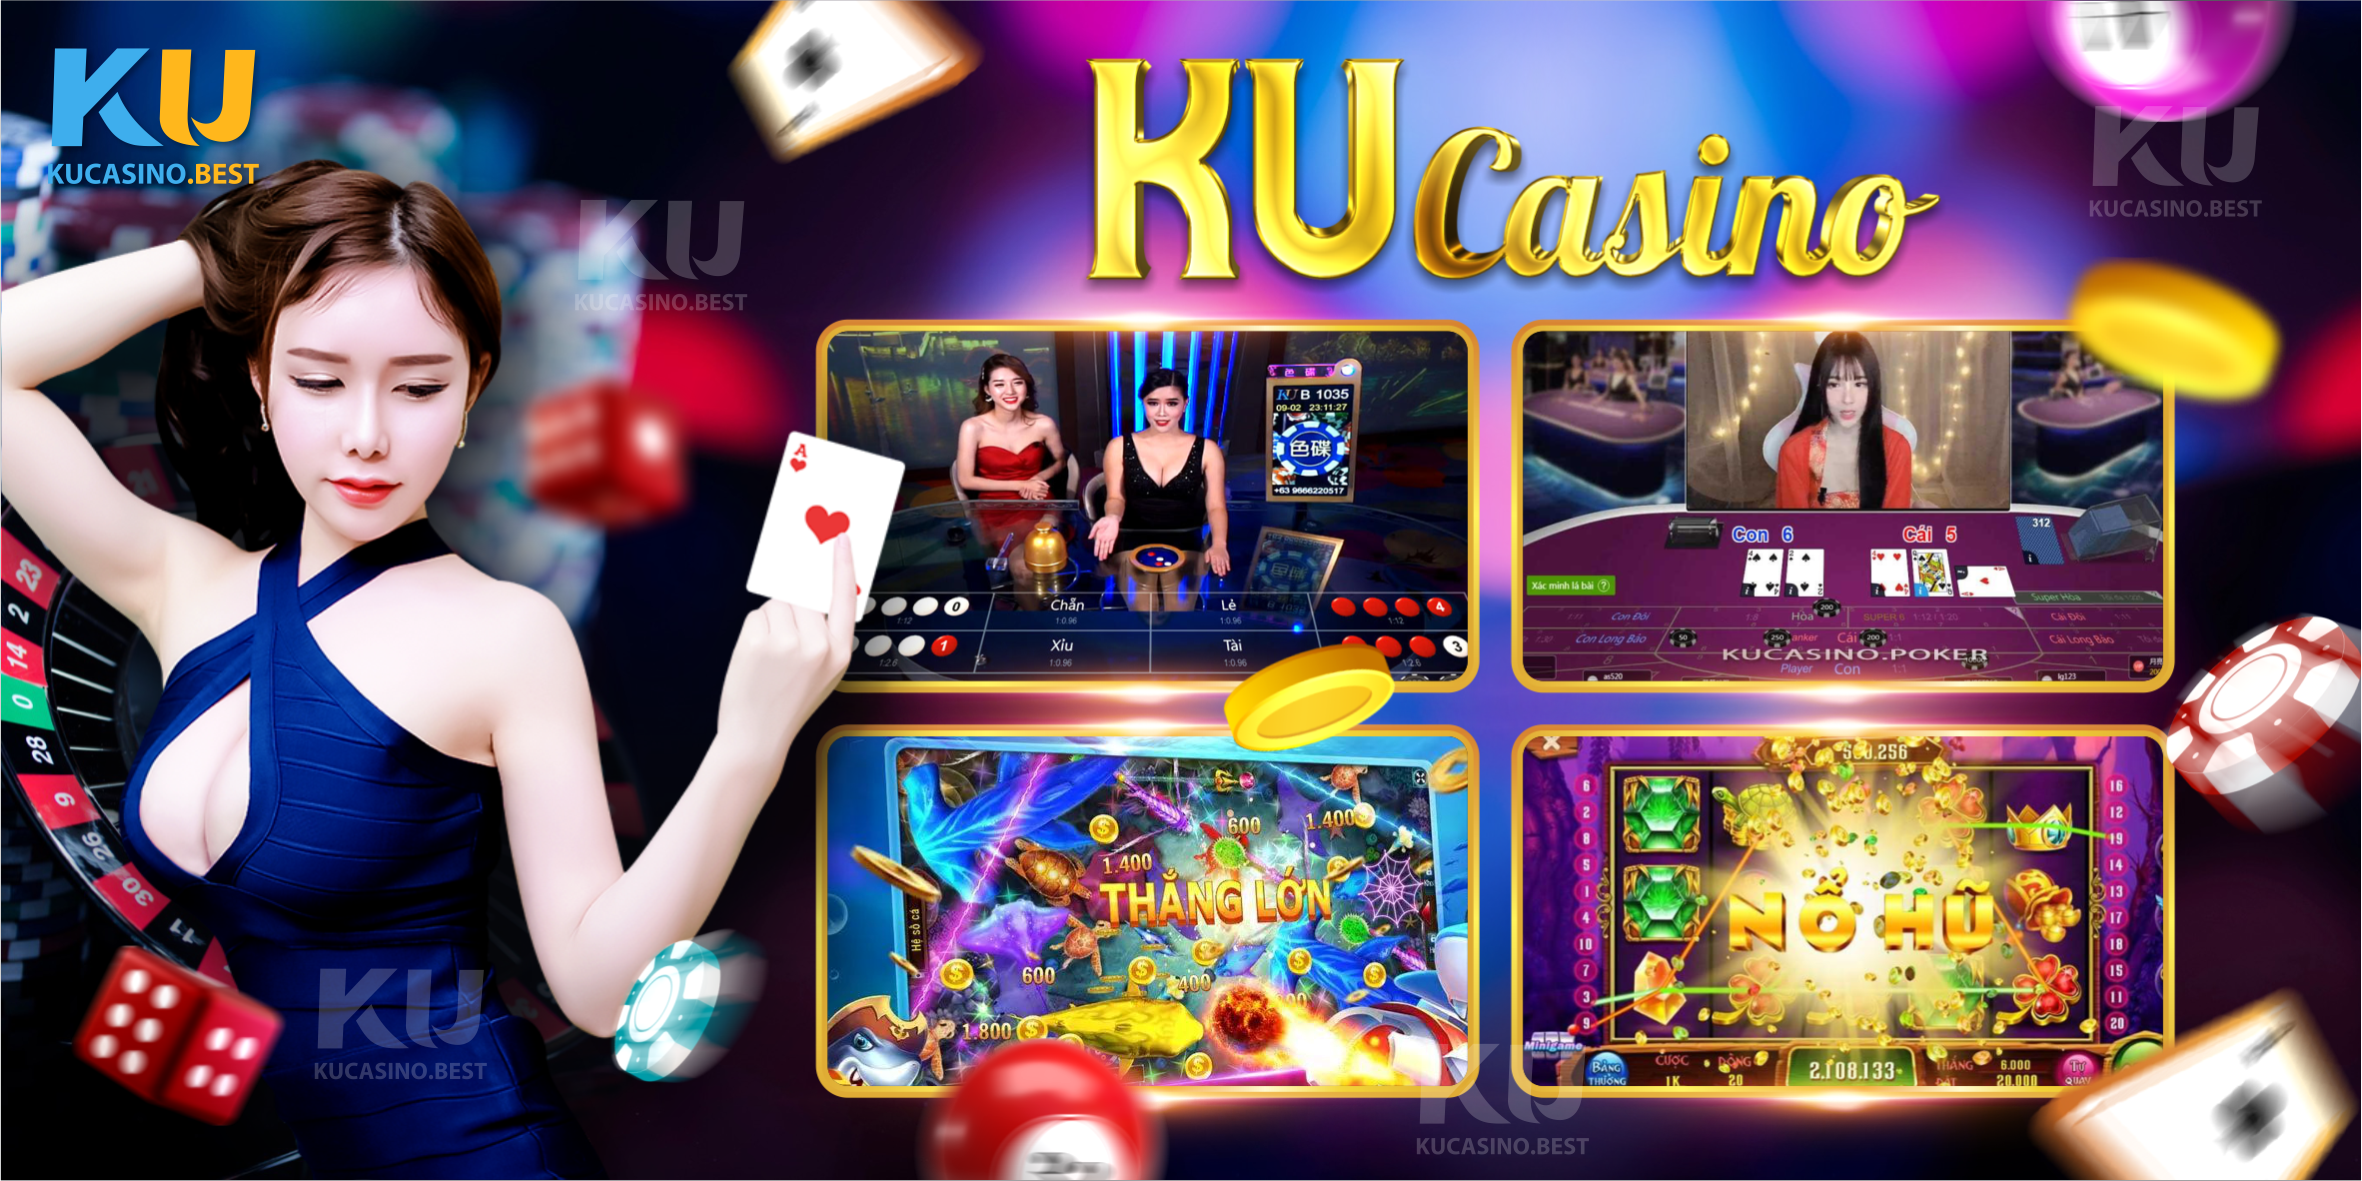 Đa dạng thể loại game để người chơi thỏa sức trải nghiệm tại Ku Casino